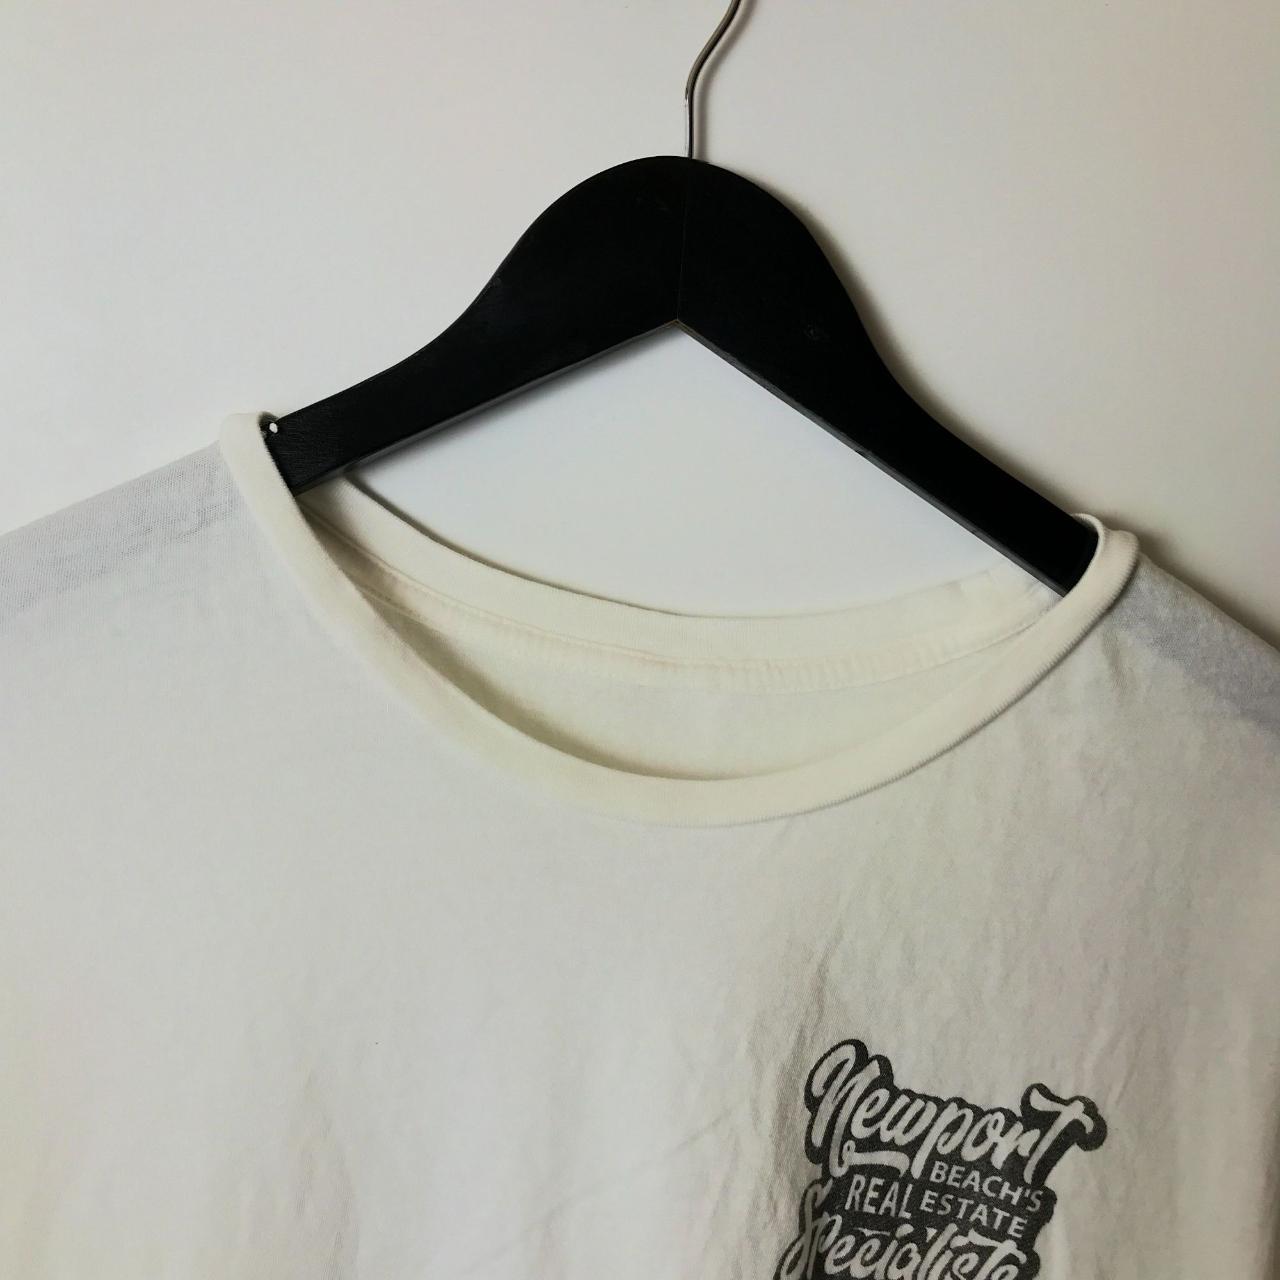 Team O'Neill T Shirt Four Leaf Clover Single Stitch... - Depop